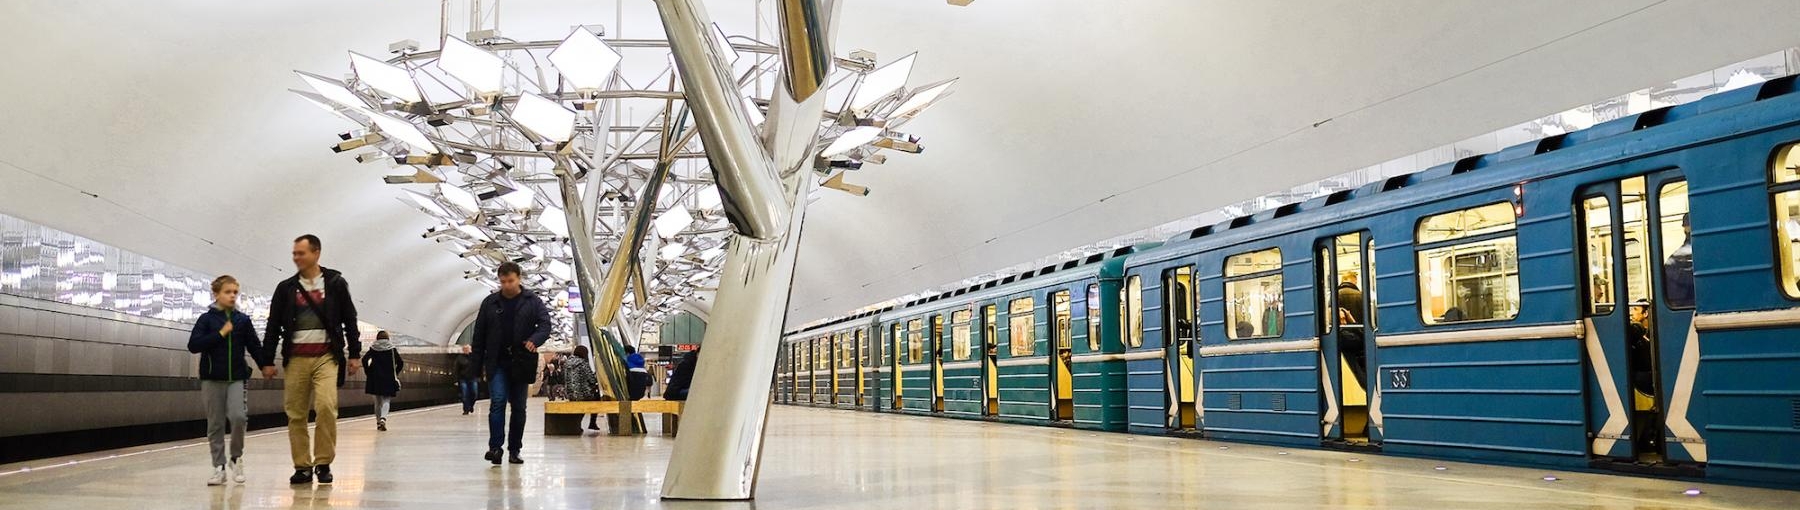 Metro w Moskwie. Fot. Vereshchagin Dmitry /Shutterstock